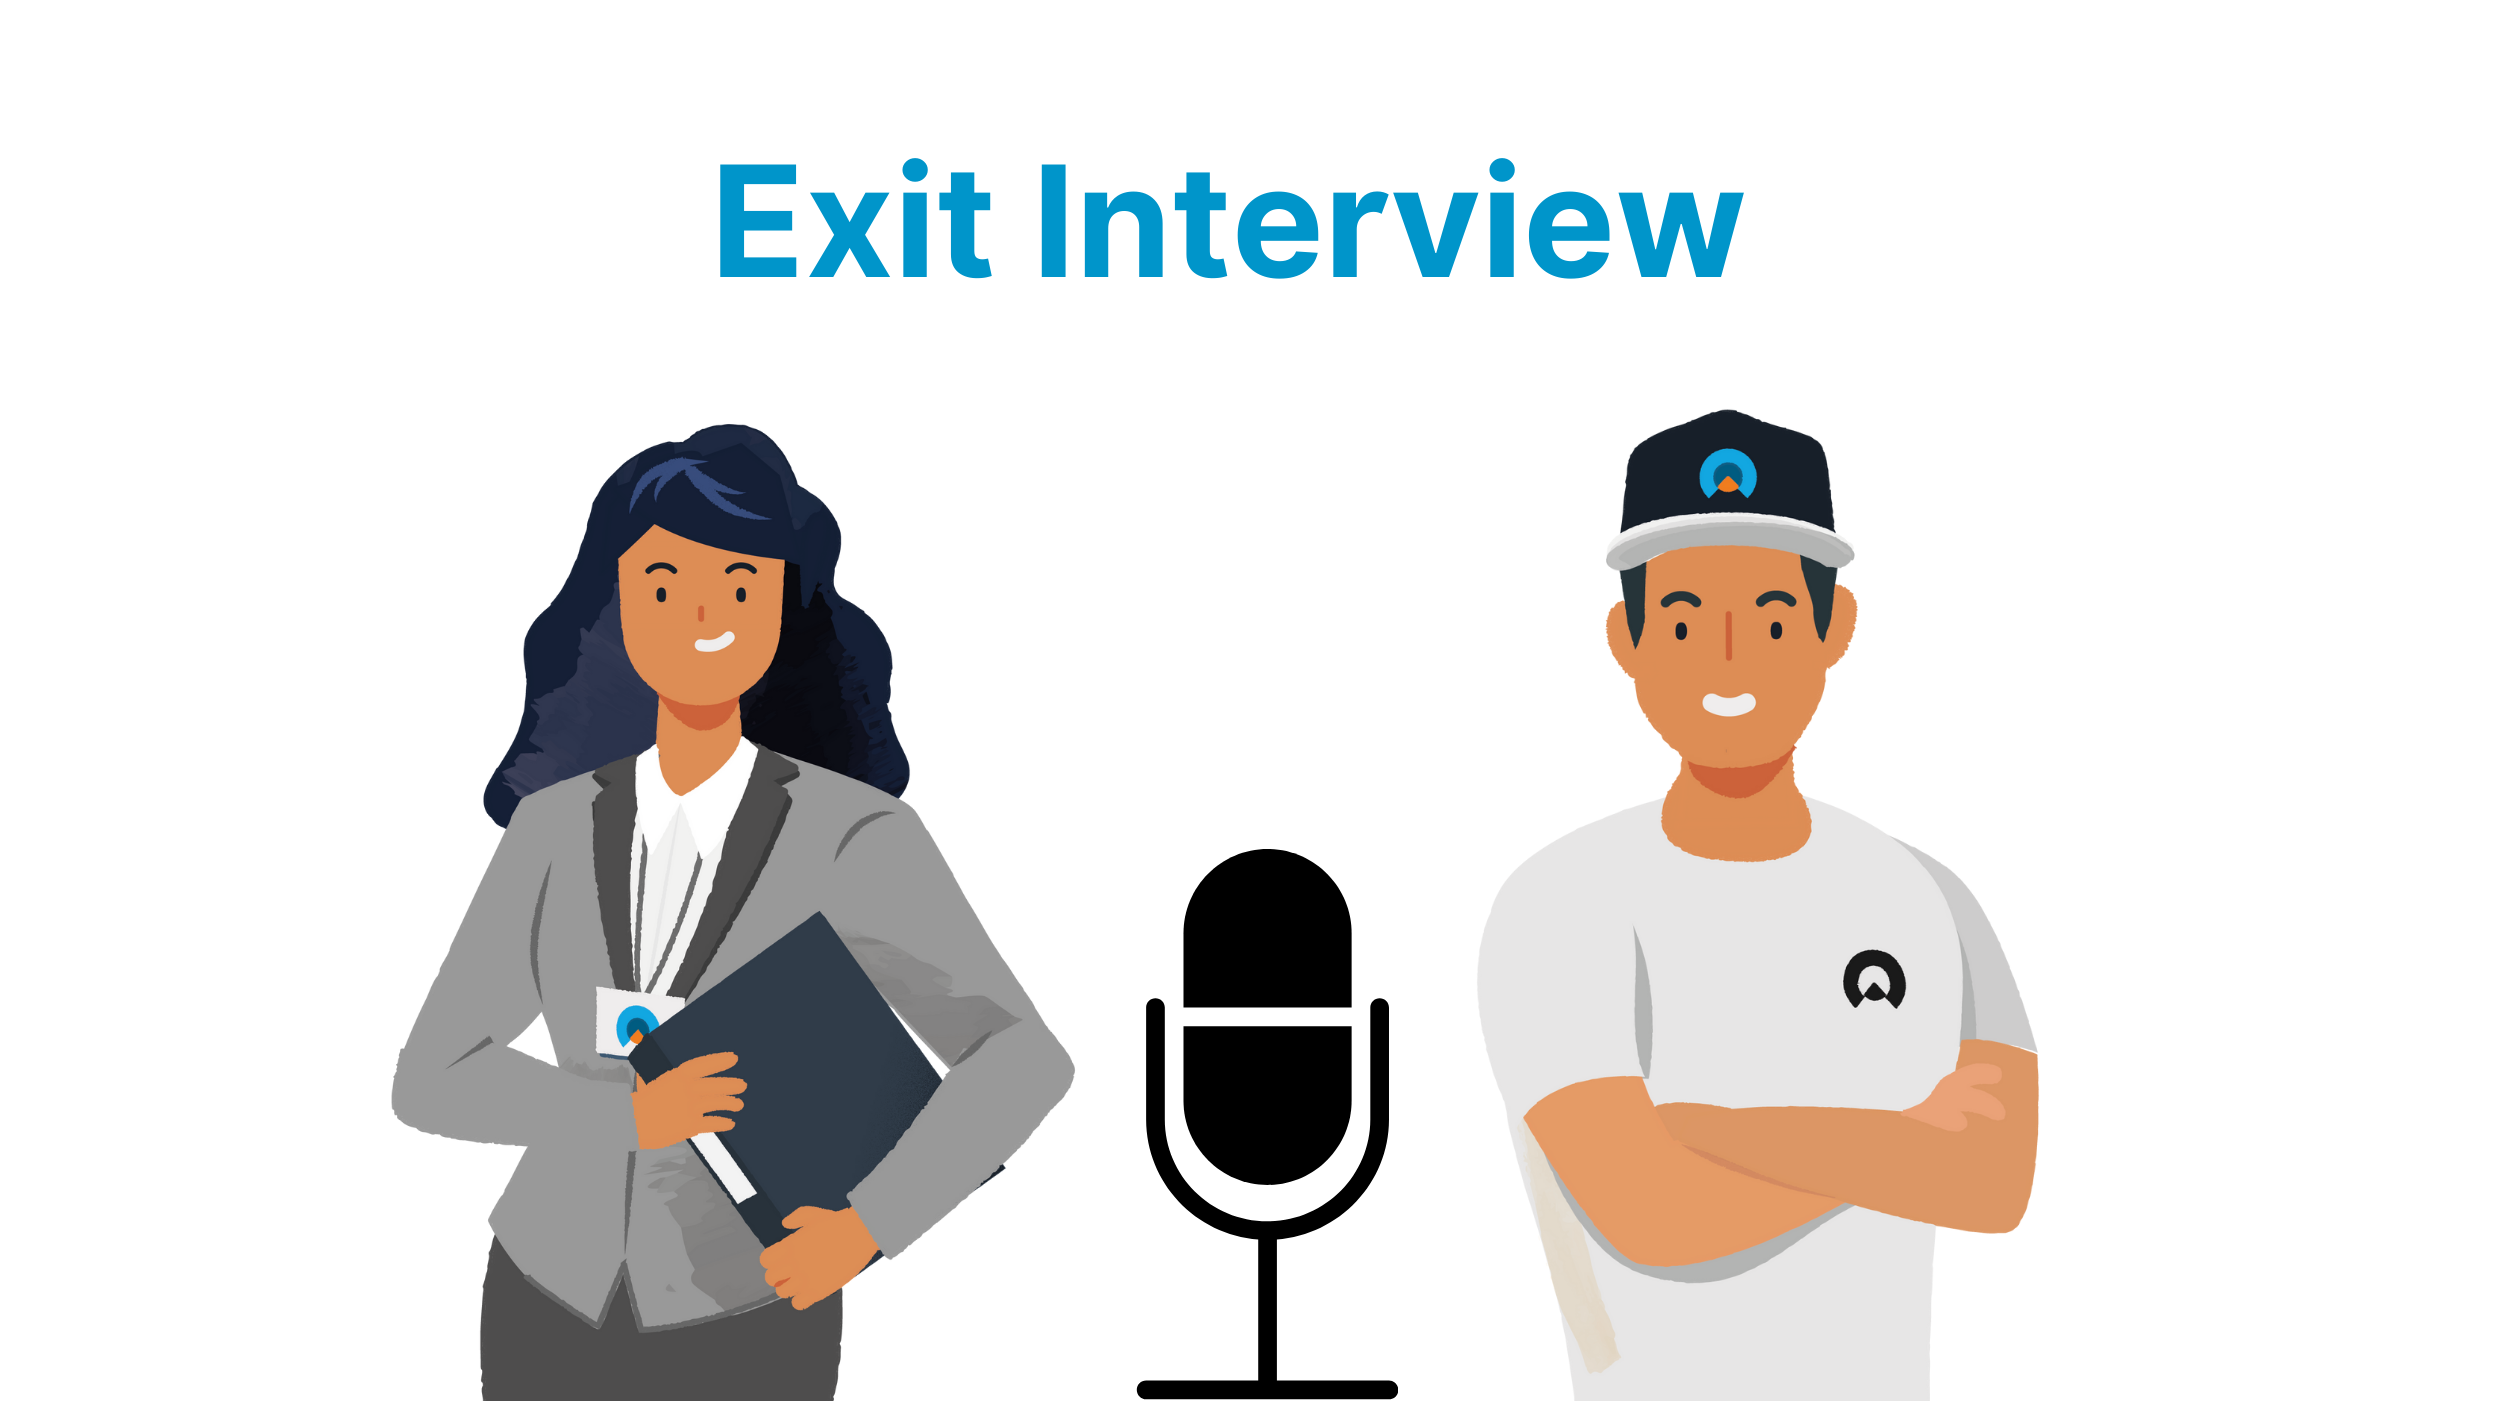 Exit interview: perché prevederla in azienda?